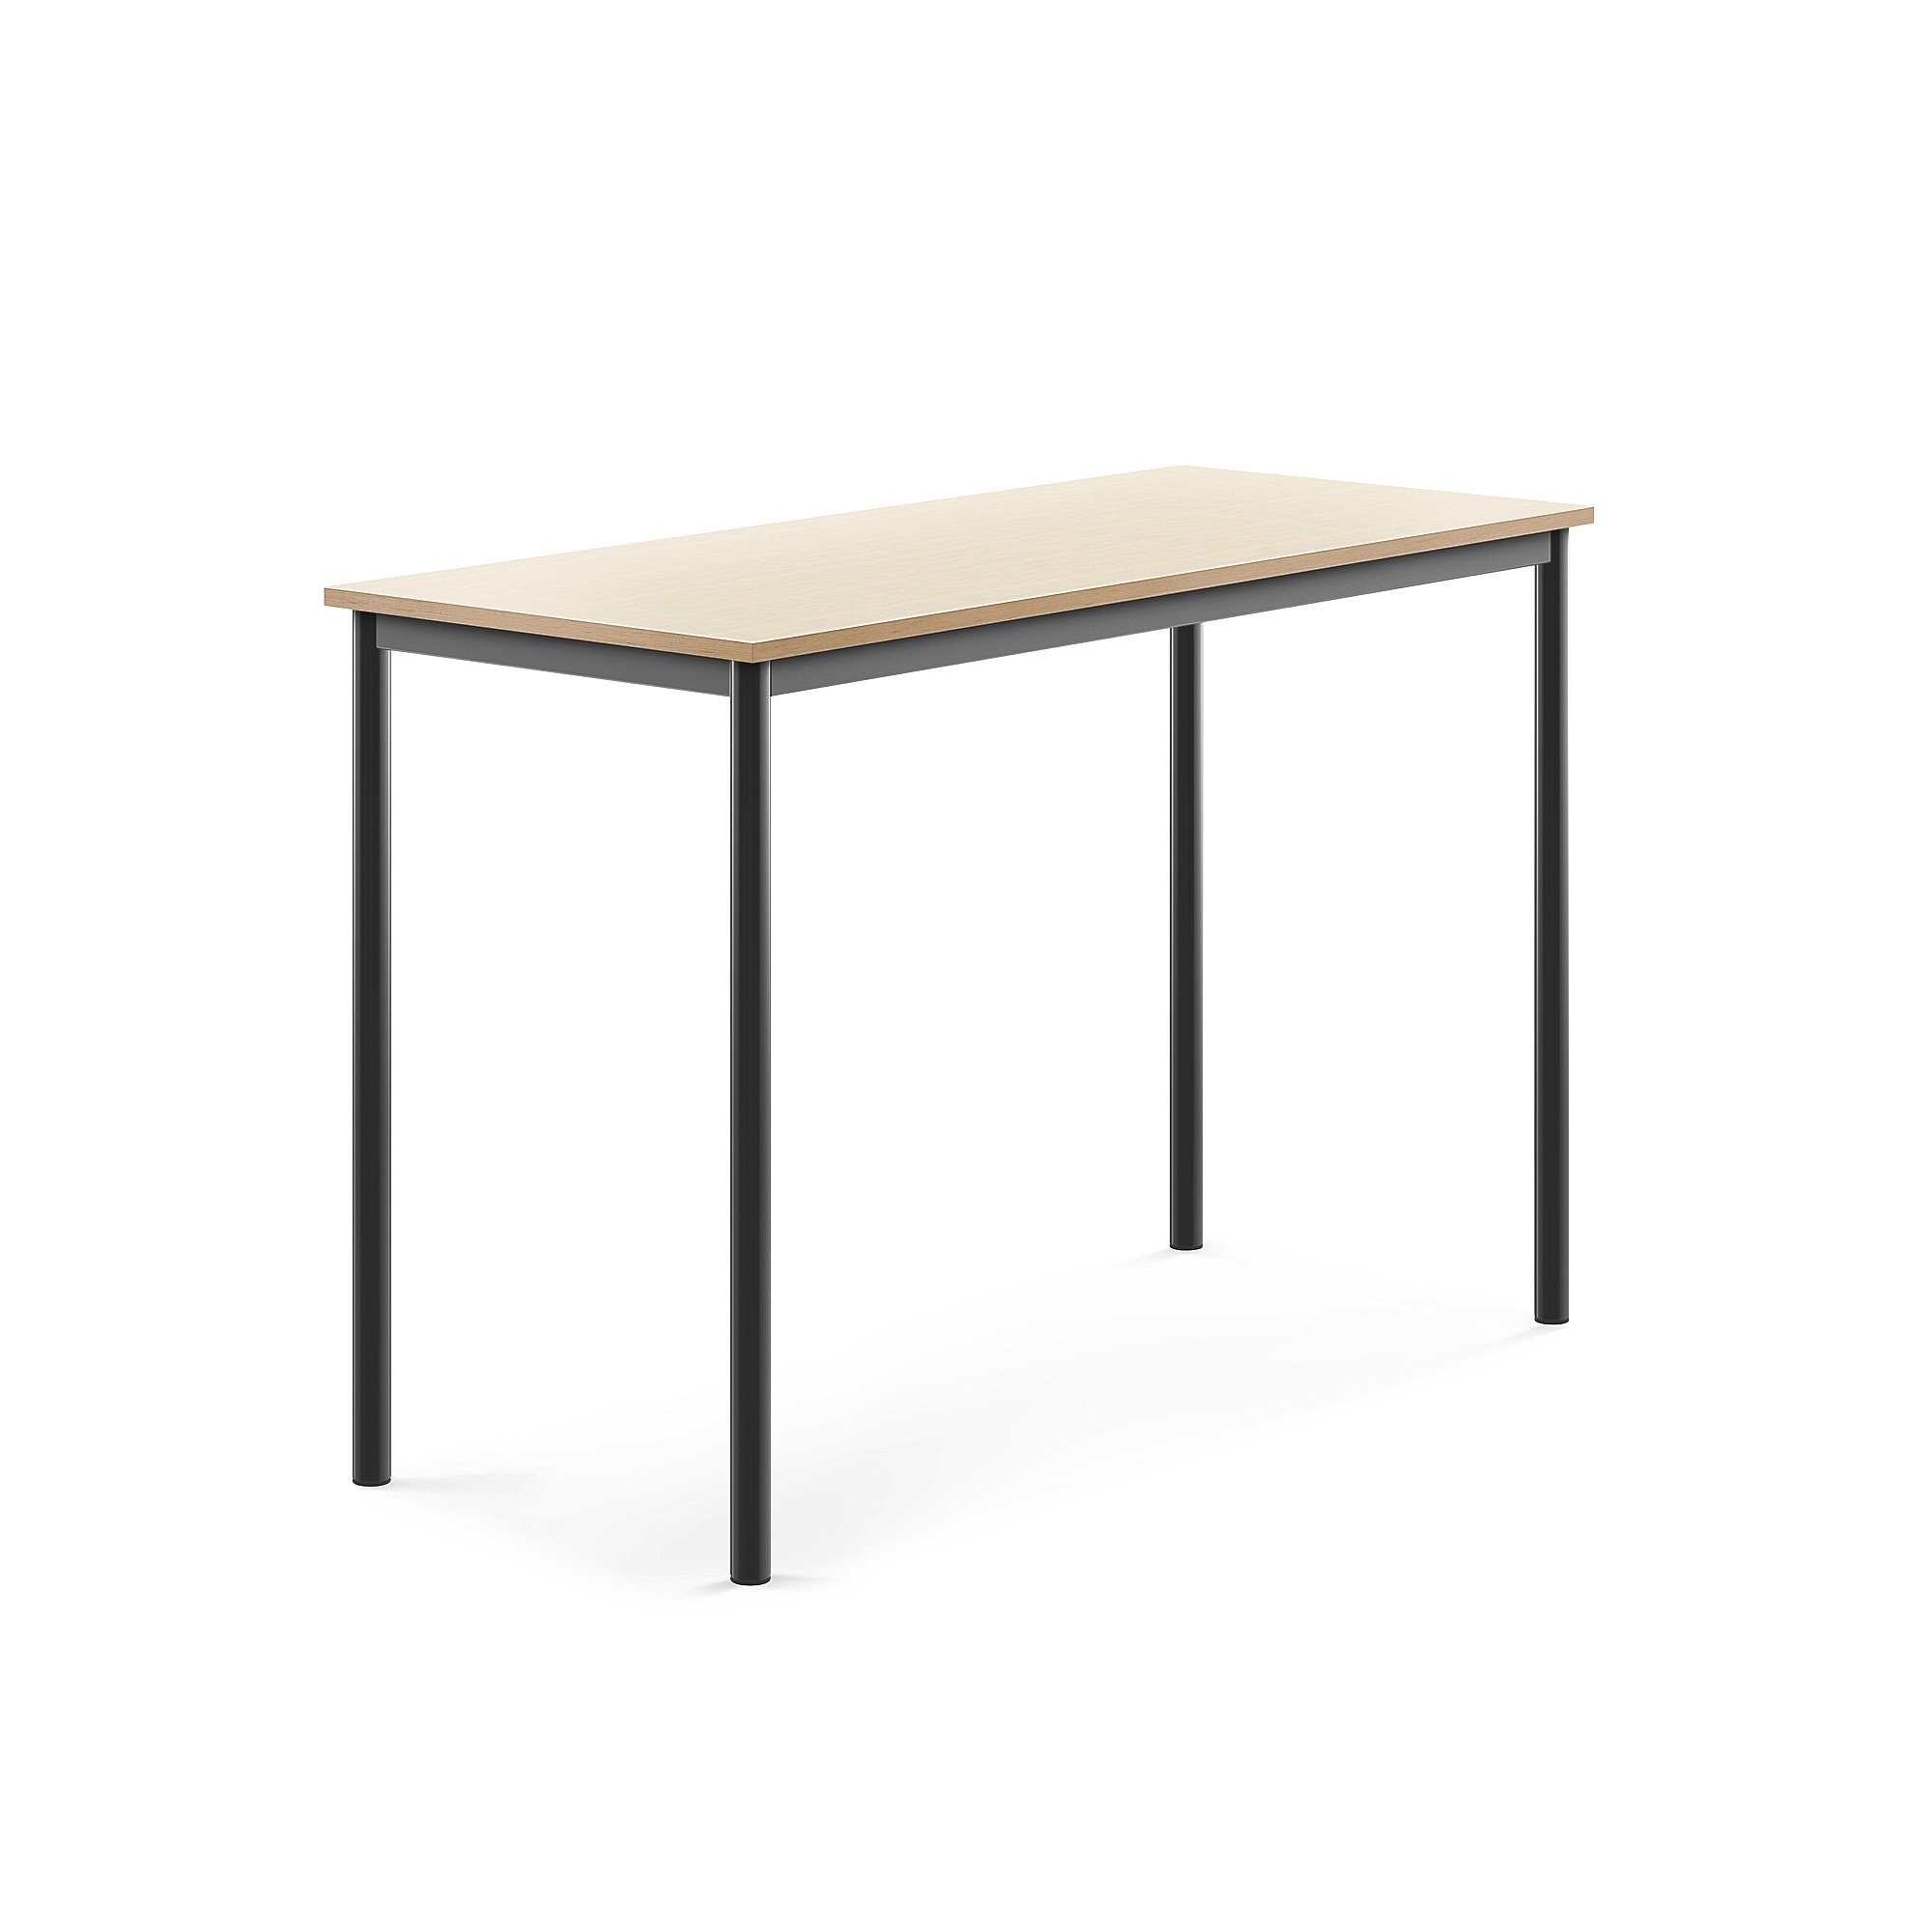 Stůl SONITUS, 1400x600x900 mm, antracitově šedé nohy, HPL deska tlumící hluk, bříza